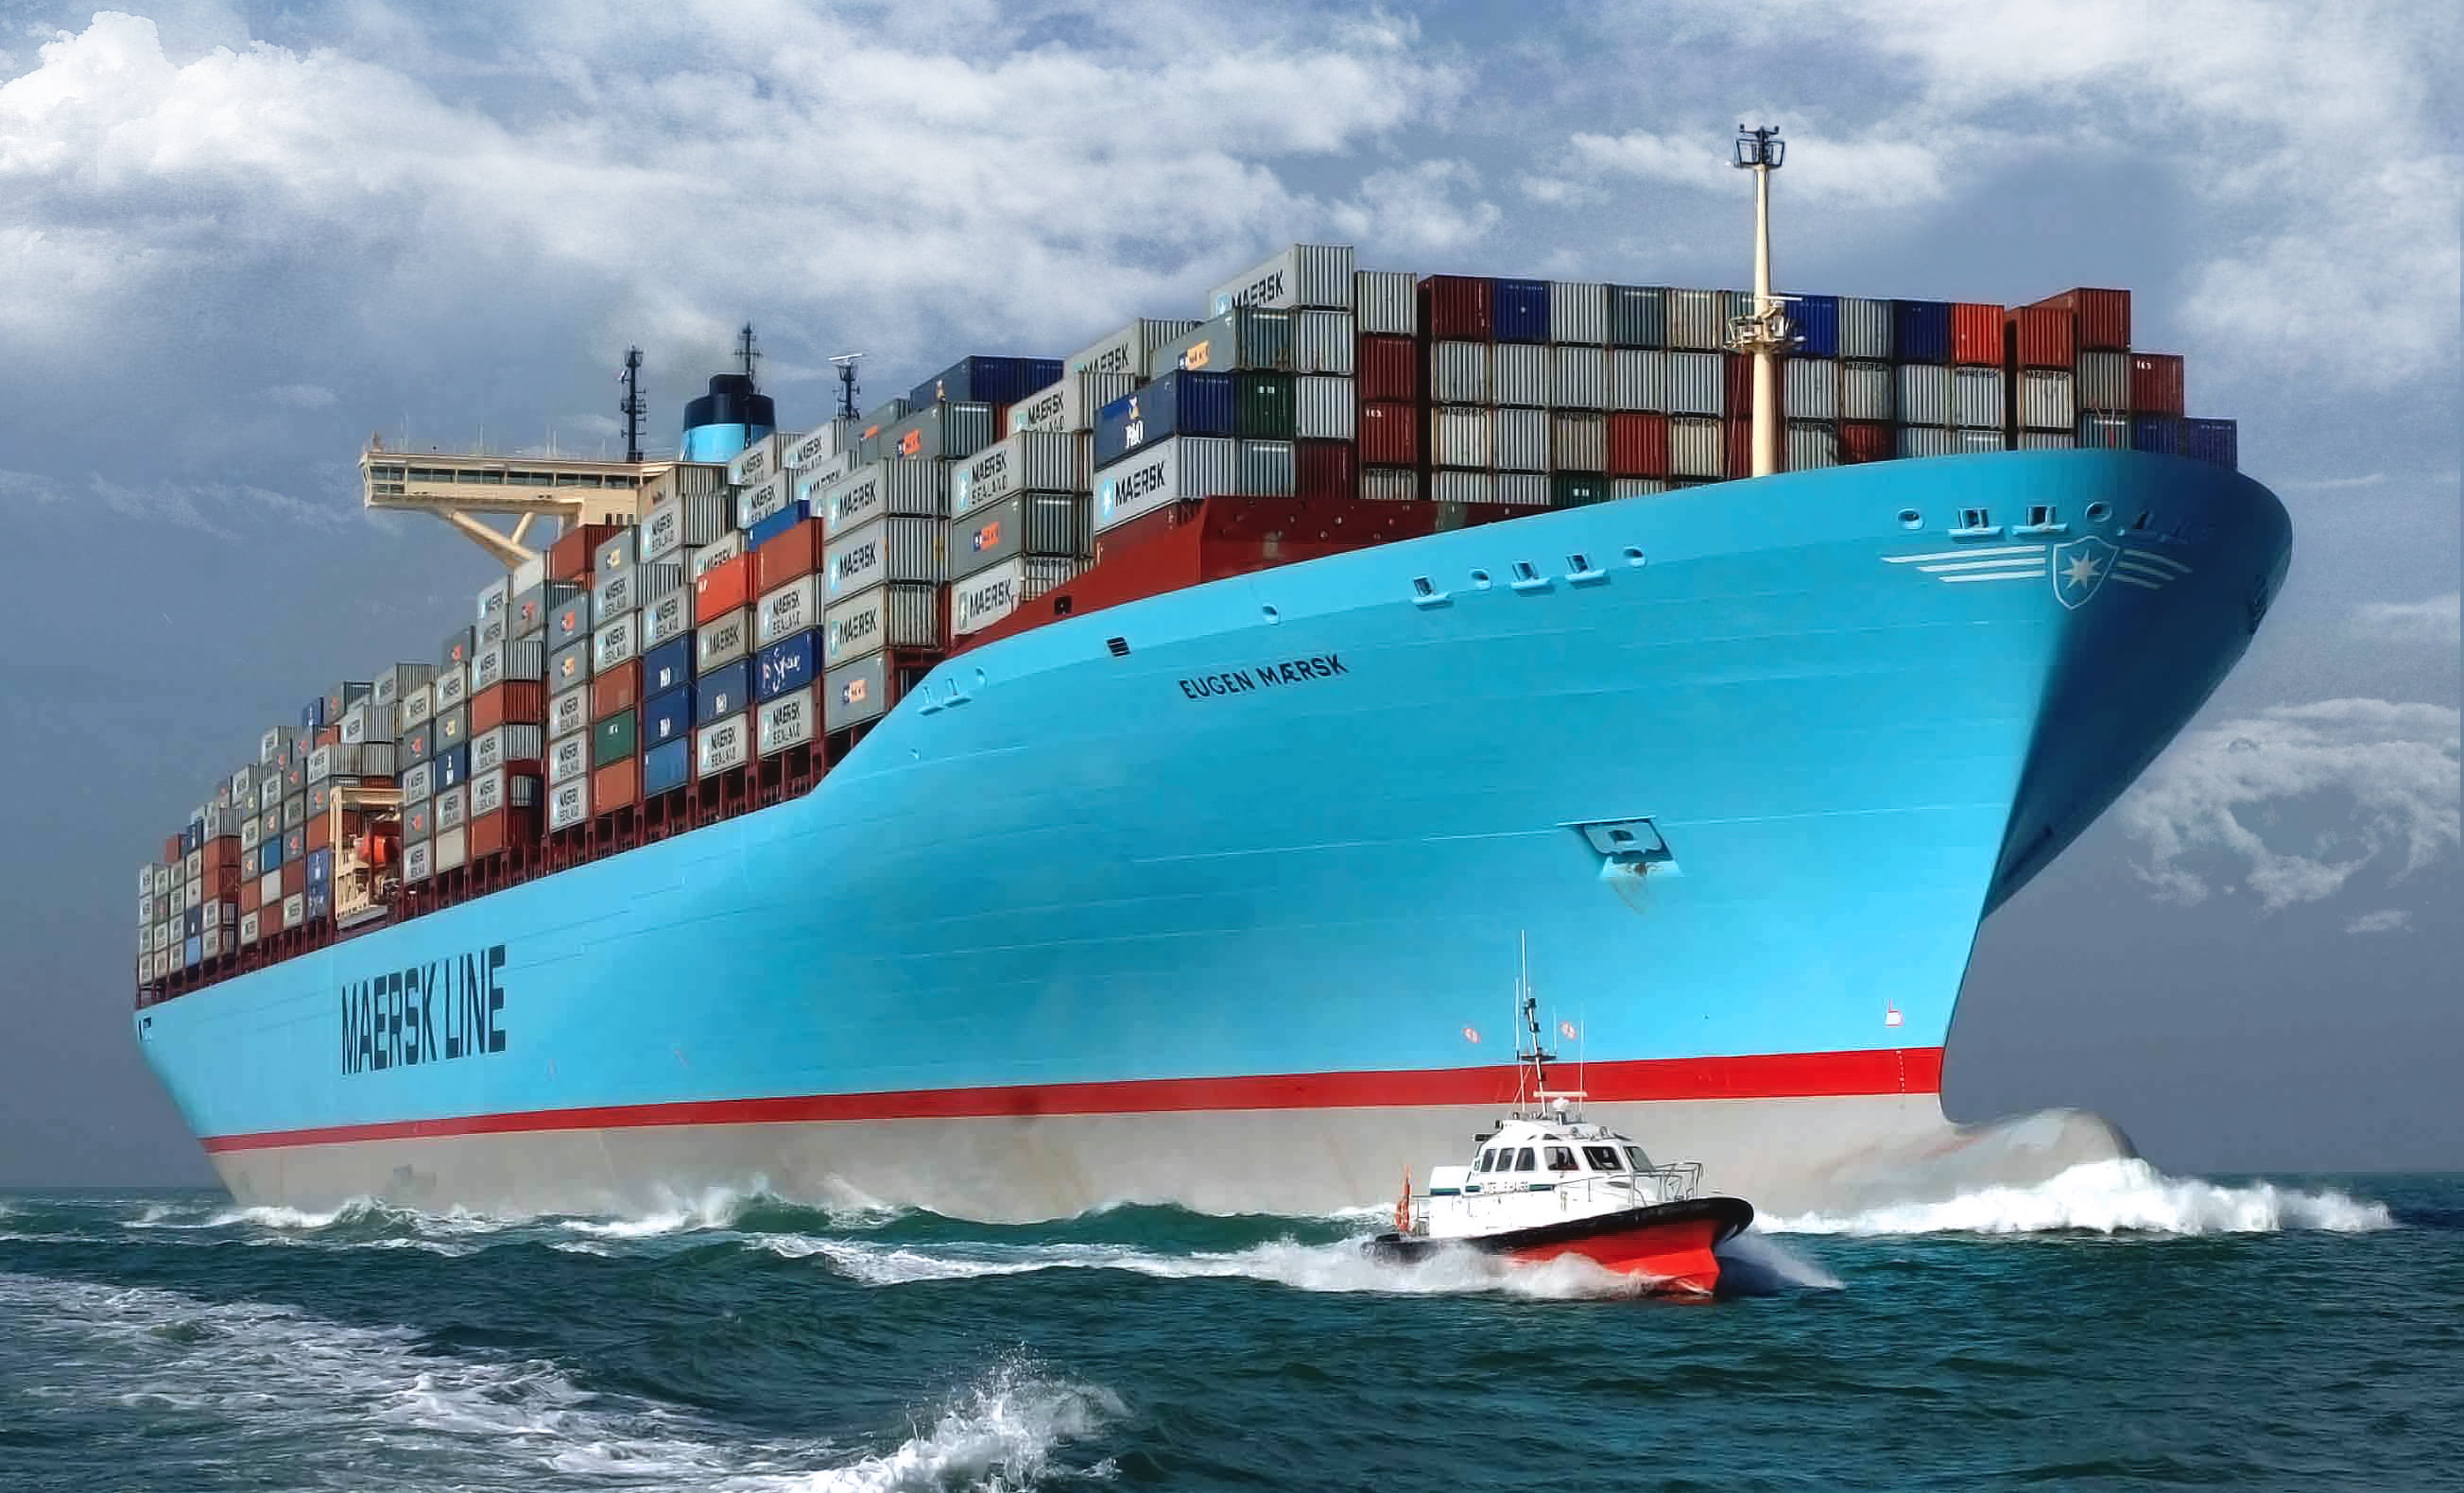 blue cargo ship, Water, Sea, Board, Case, The ship, A container ship